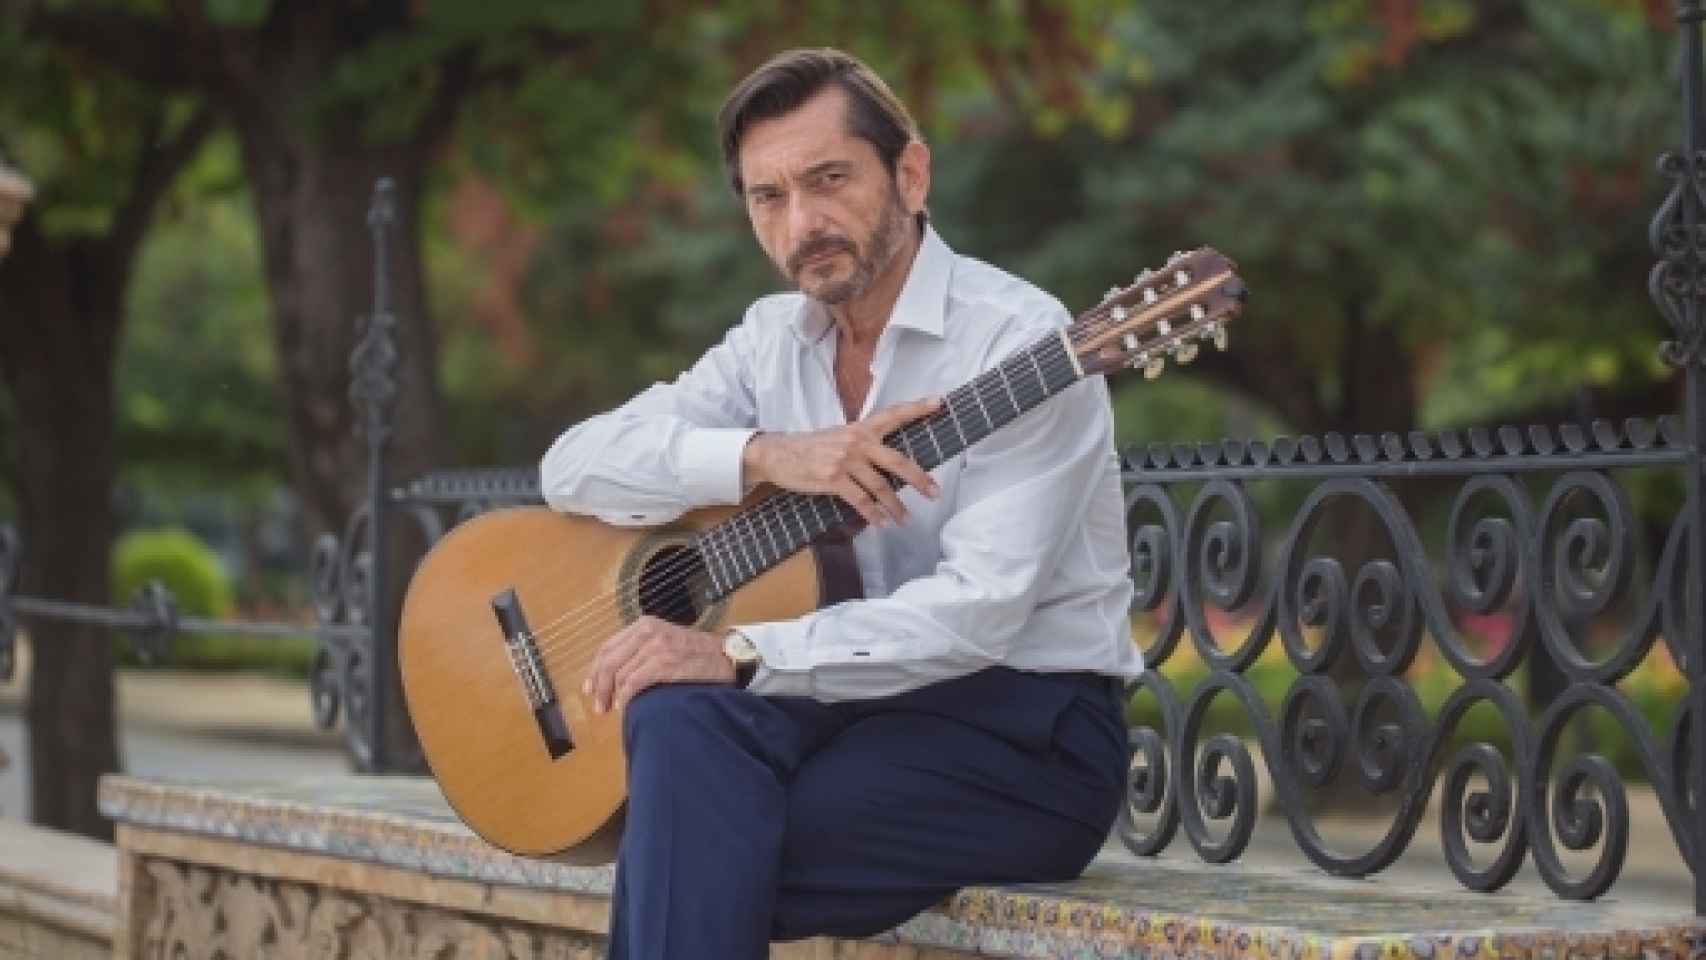 Image: Gallardo del Rey, 50 años a la guitarra